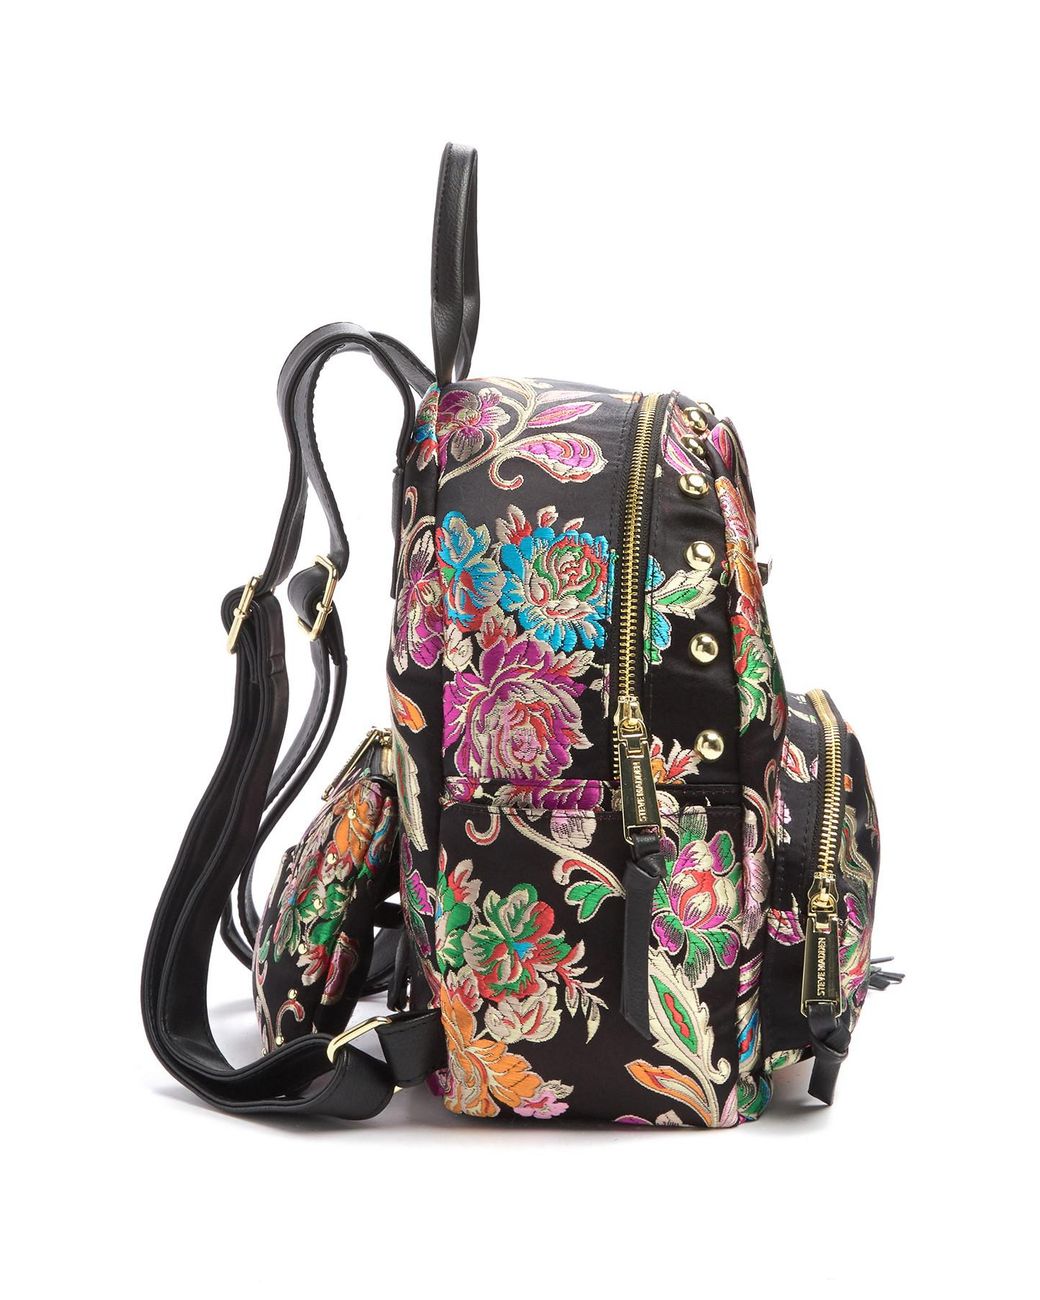 NEW Steve Madden Floral Backpack